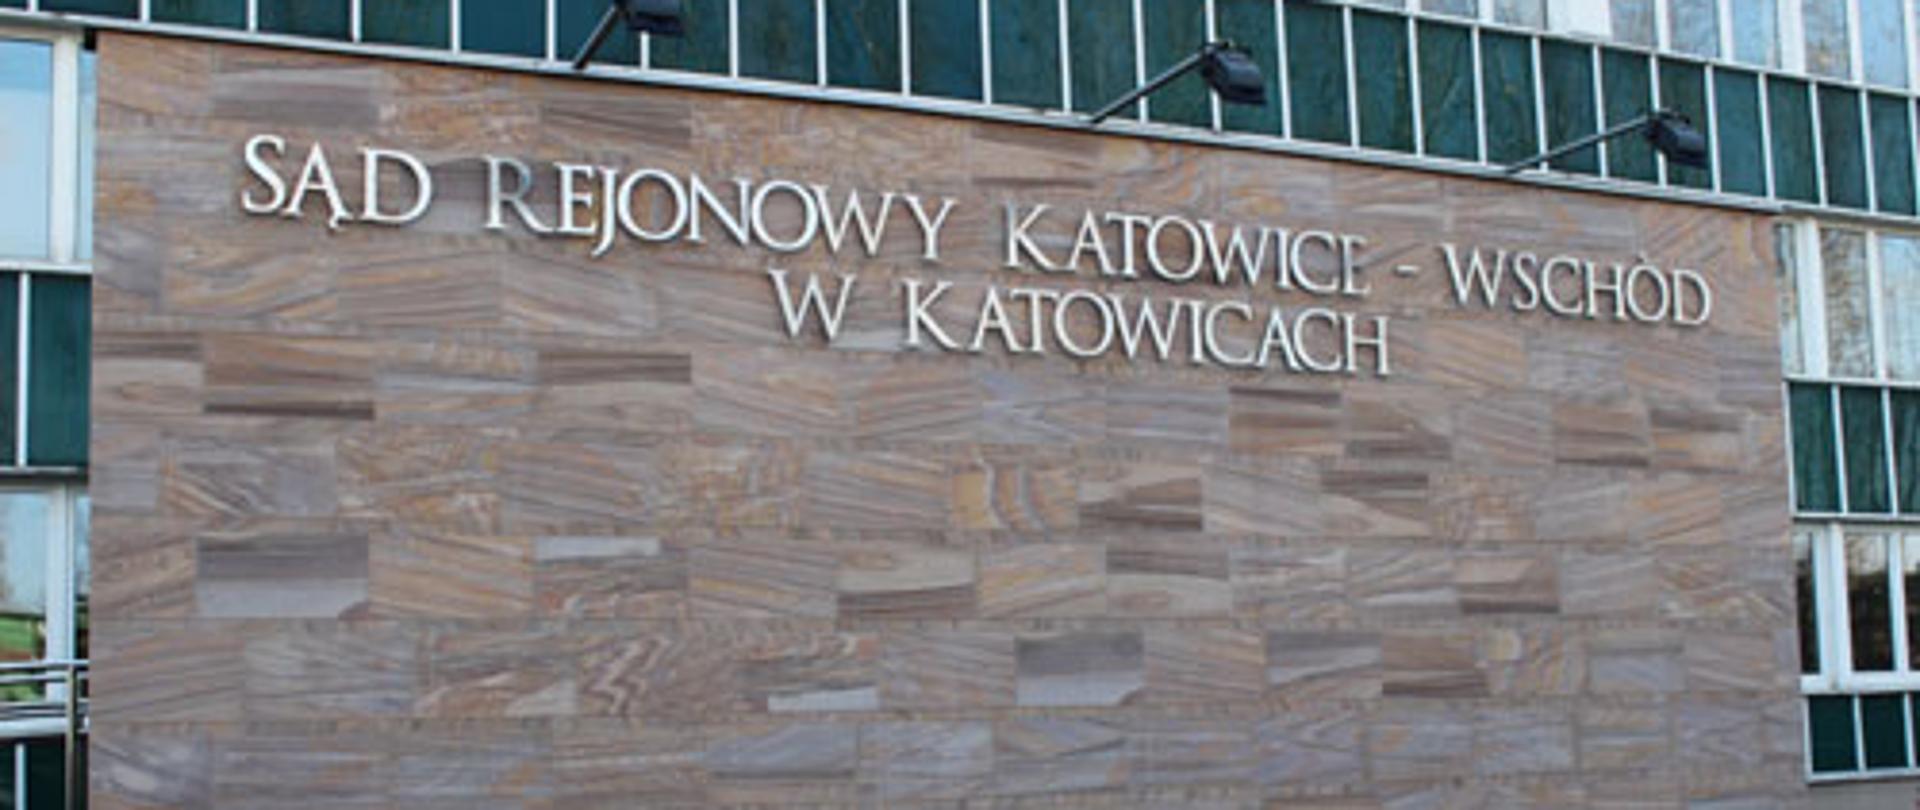 Sąd Rejonowy Katowice-Wschód w Katowicach